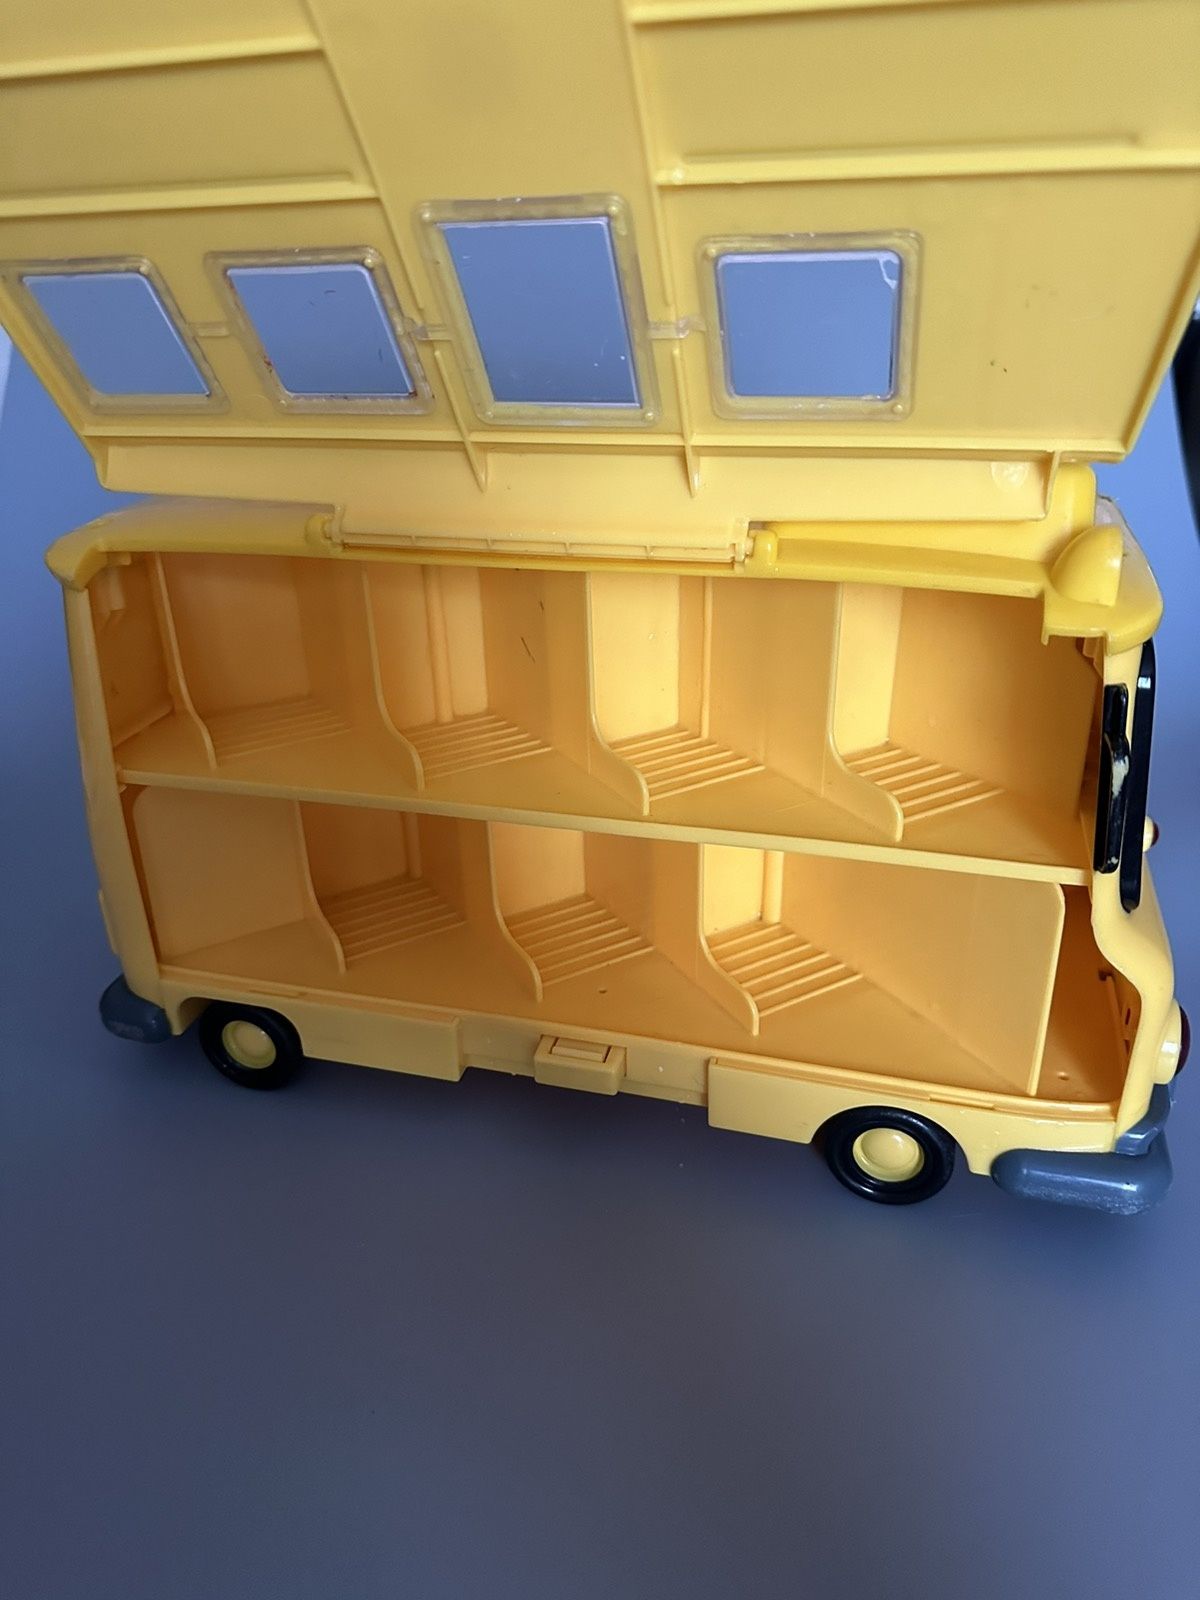 Кейс-гараж шкільний автобус Скулбі Robocar Poli